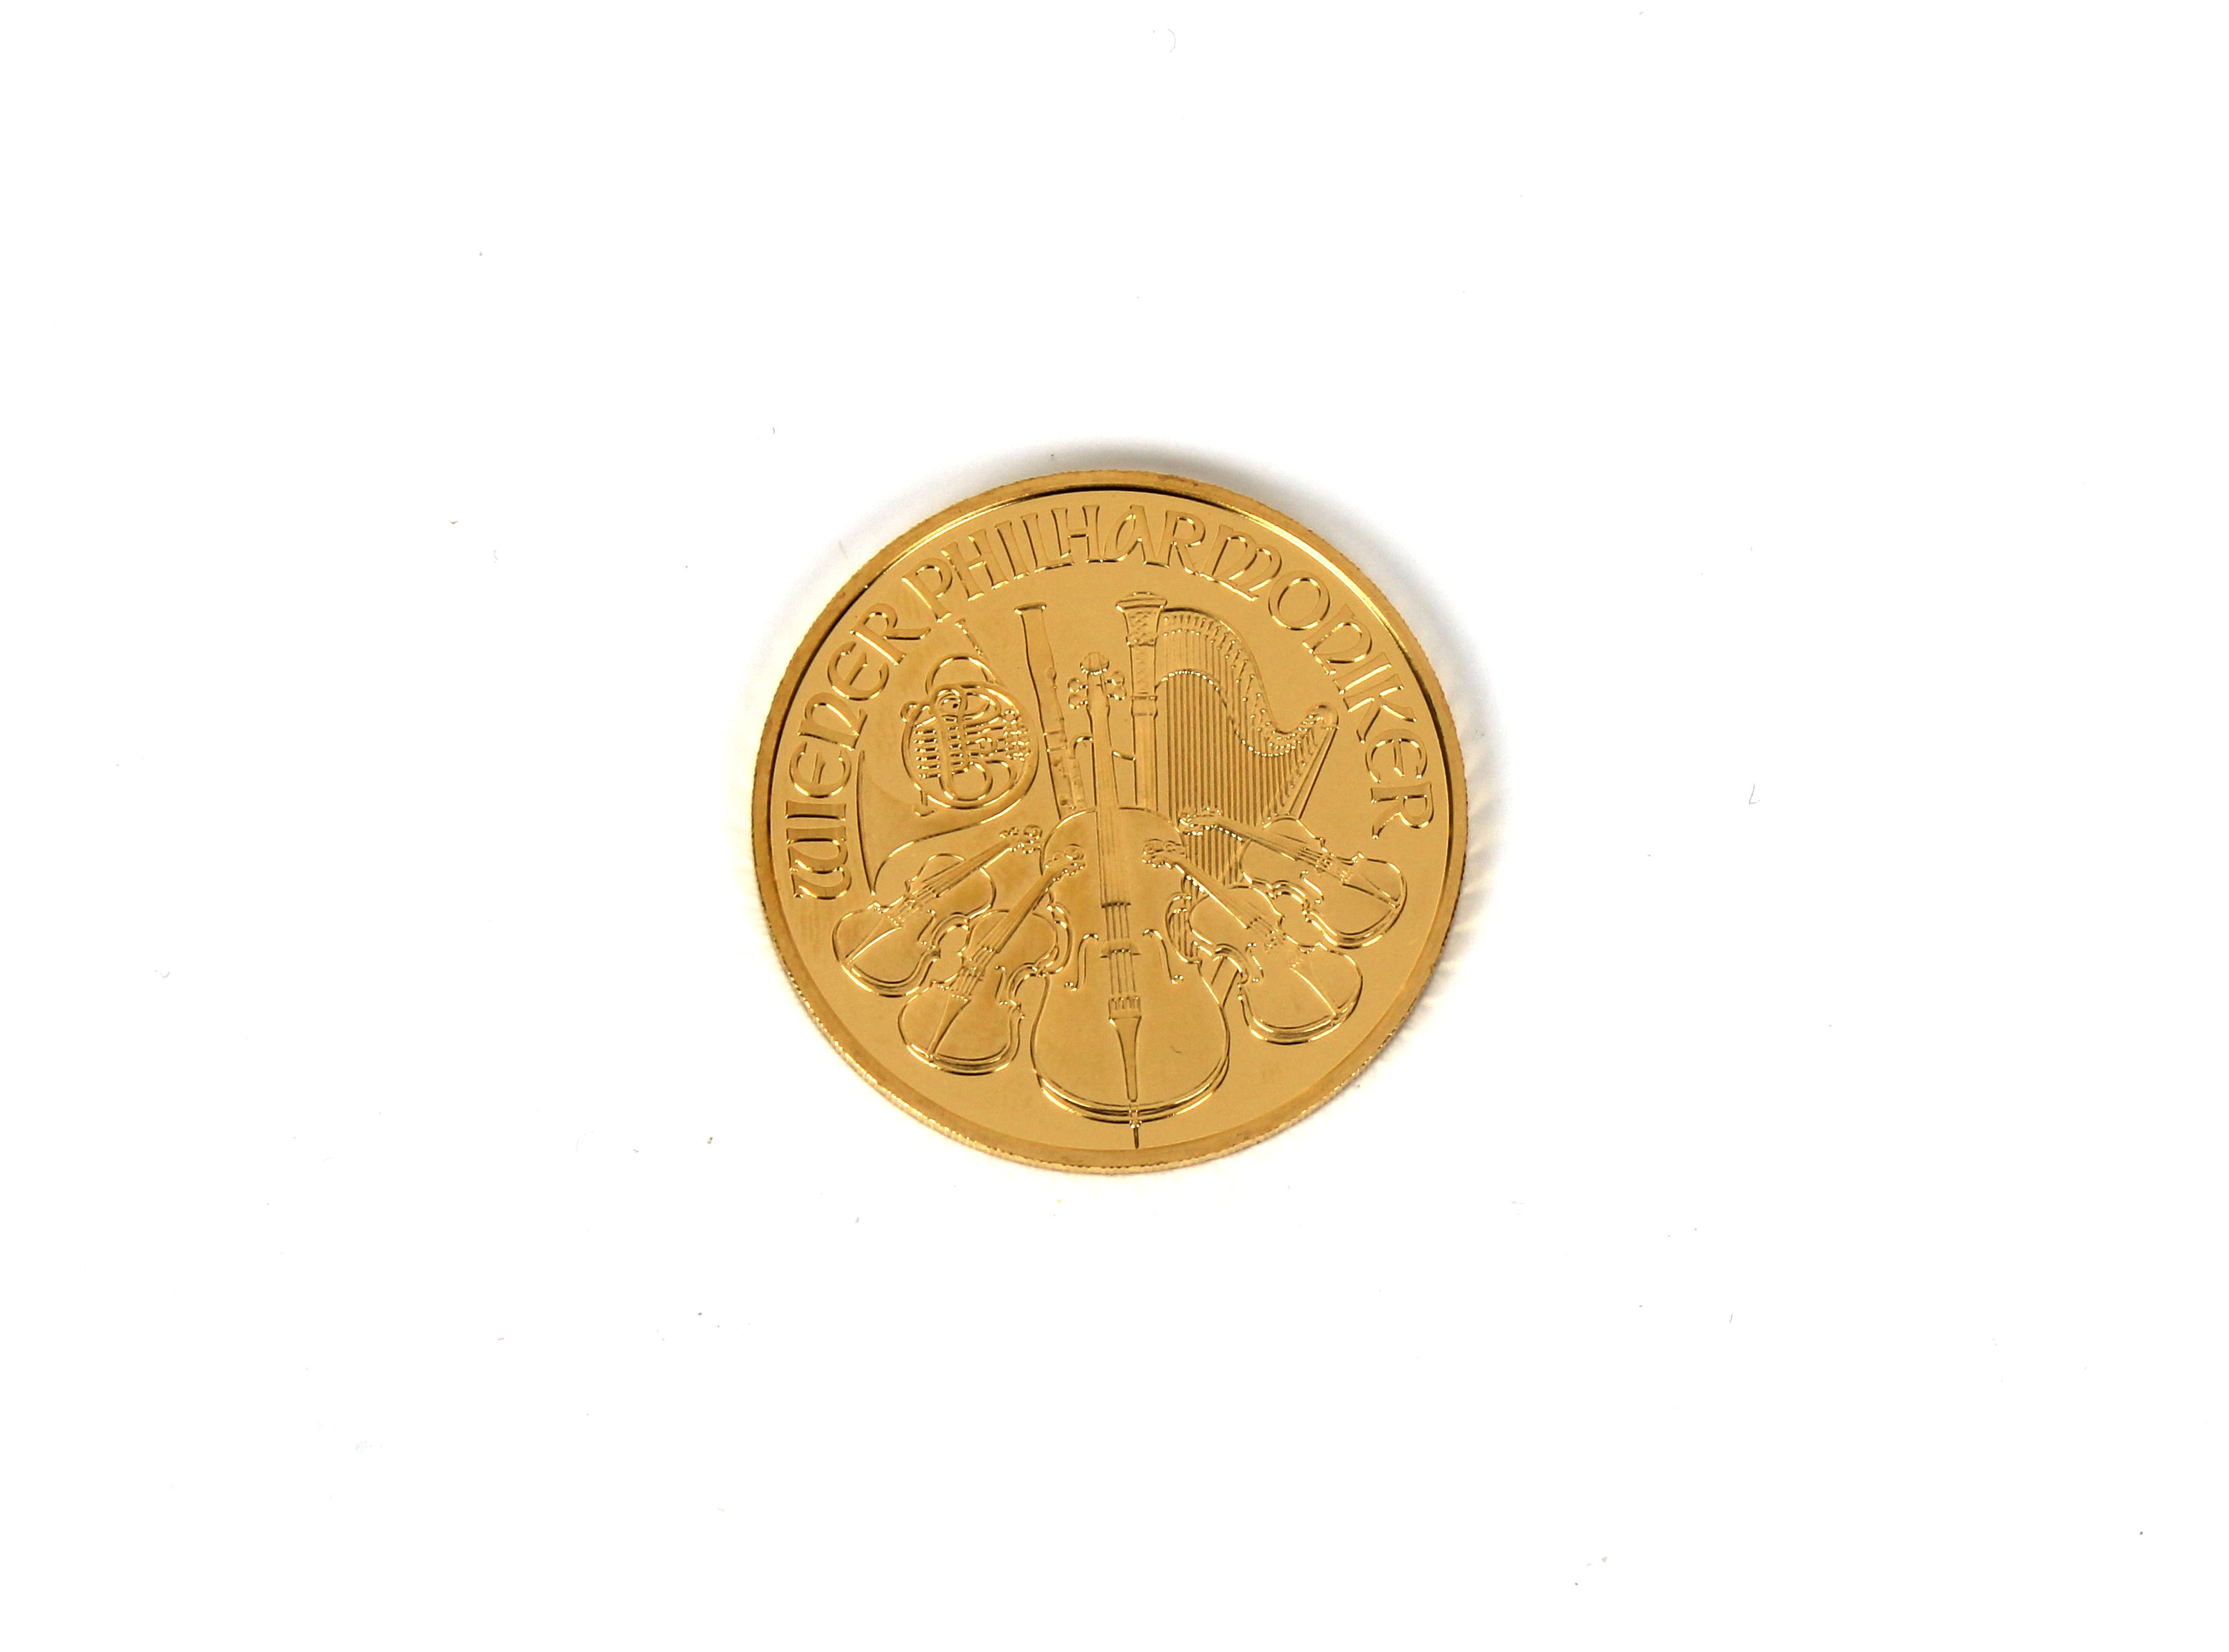 A Münze Österreich Vienna Austria 2003 1oz Gold (.999) 100 Euro coin. - Image 2 of 2